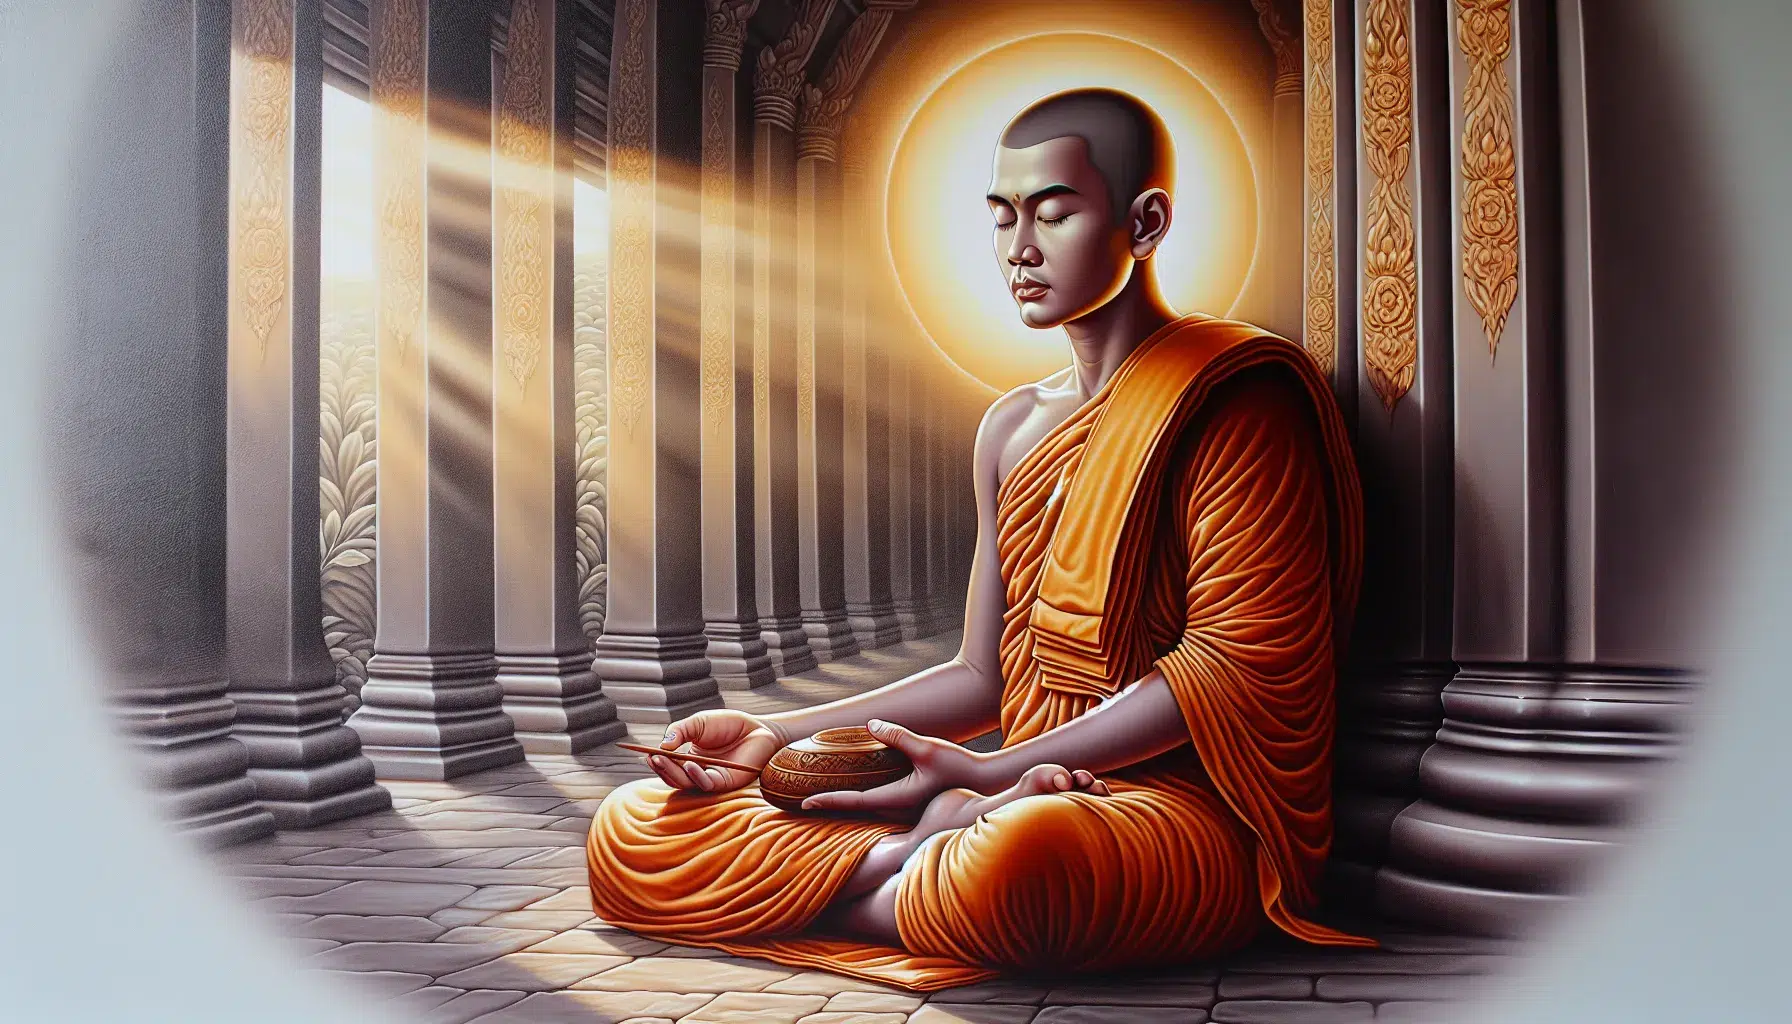 Imagen ilustrativa de un monje budista meditando en un templo